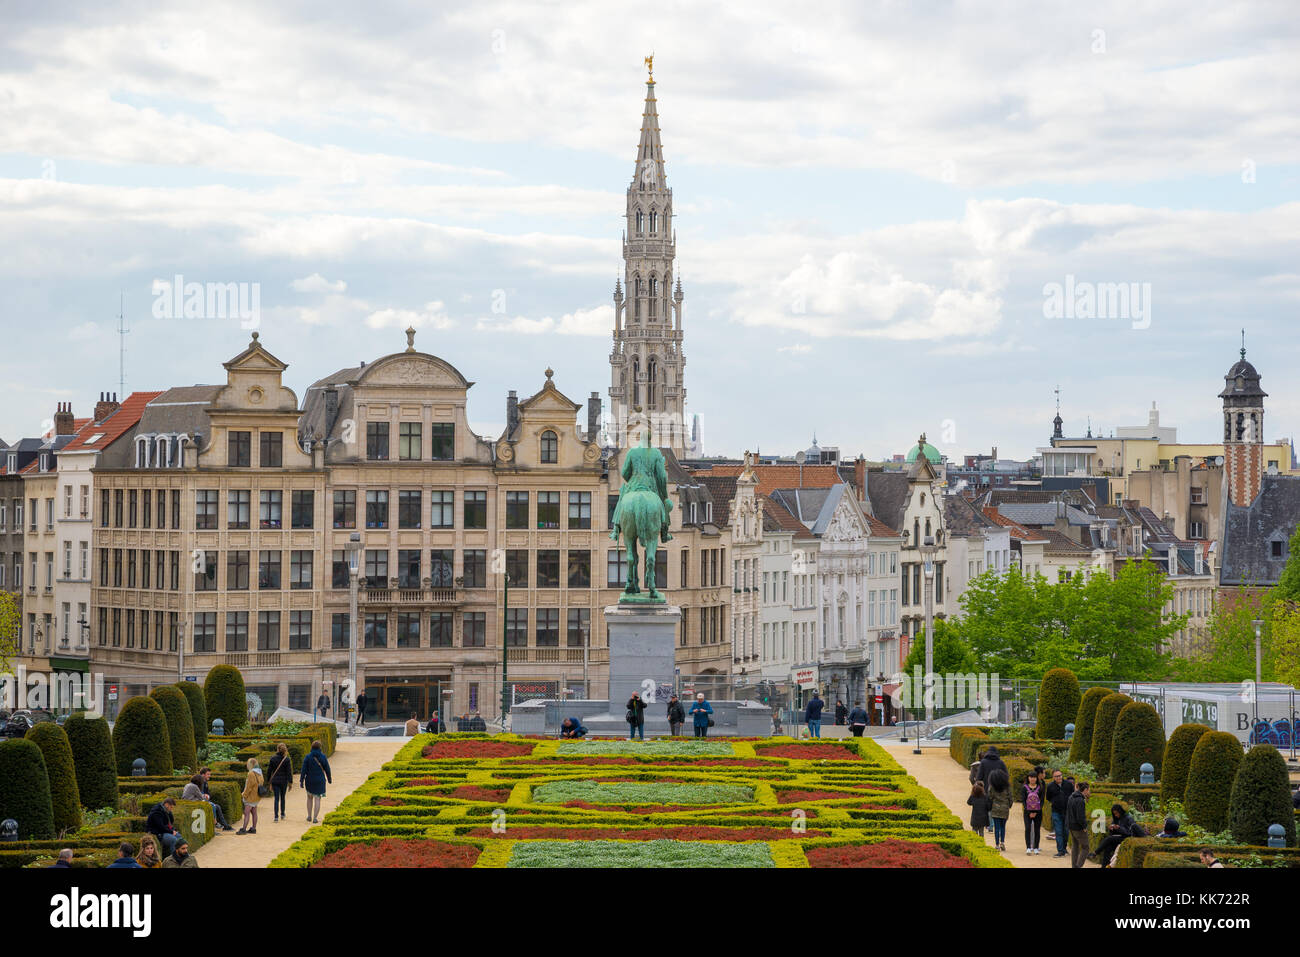 Brüssel, Belgien - April 22, 2017: Touristen in Szene von Brussels City von kunstberg oder Mont des Arts - Berg der Künste mit Rathaus und equestri Stockfoto